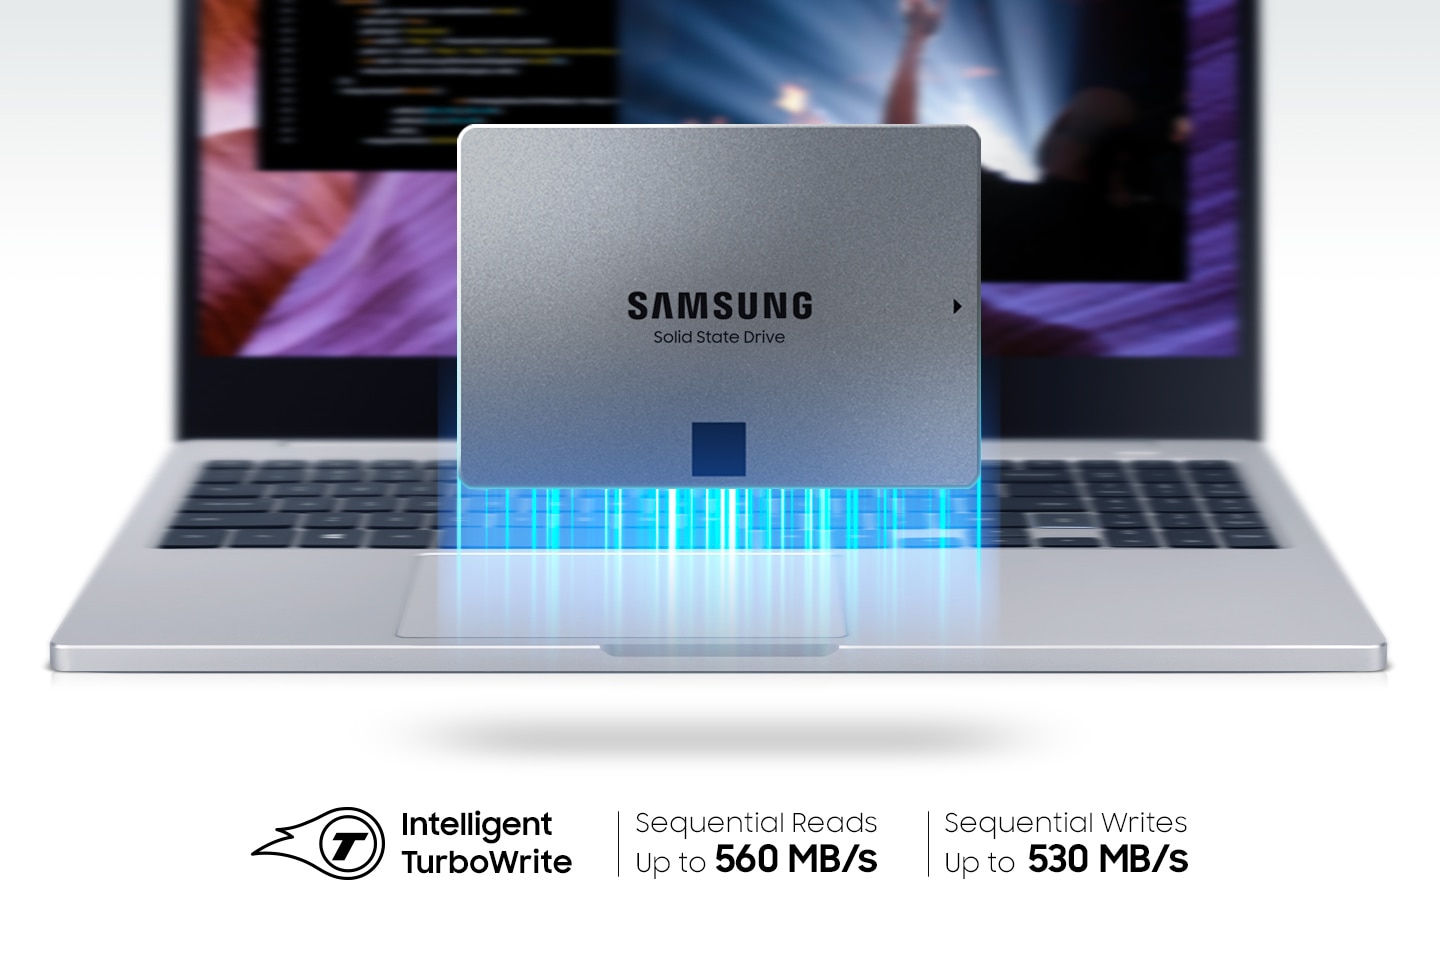 Samsung SSD 870 QVO 1TBPC/タブレット